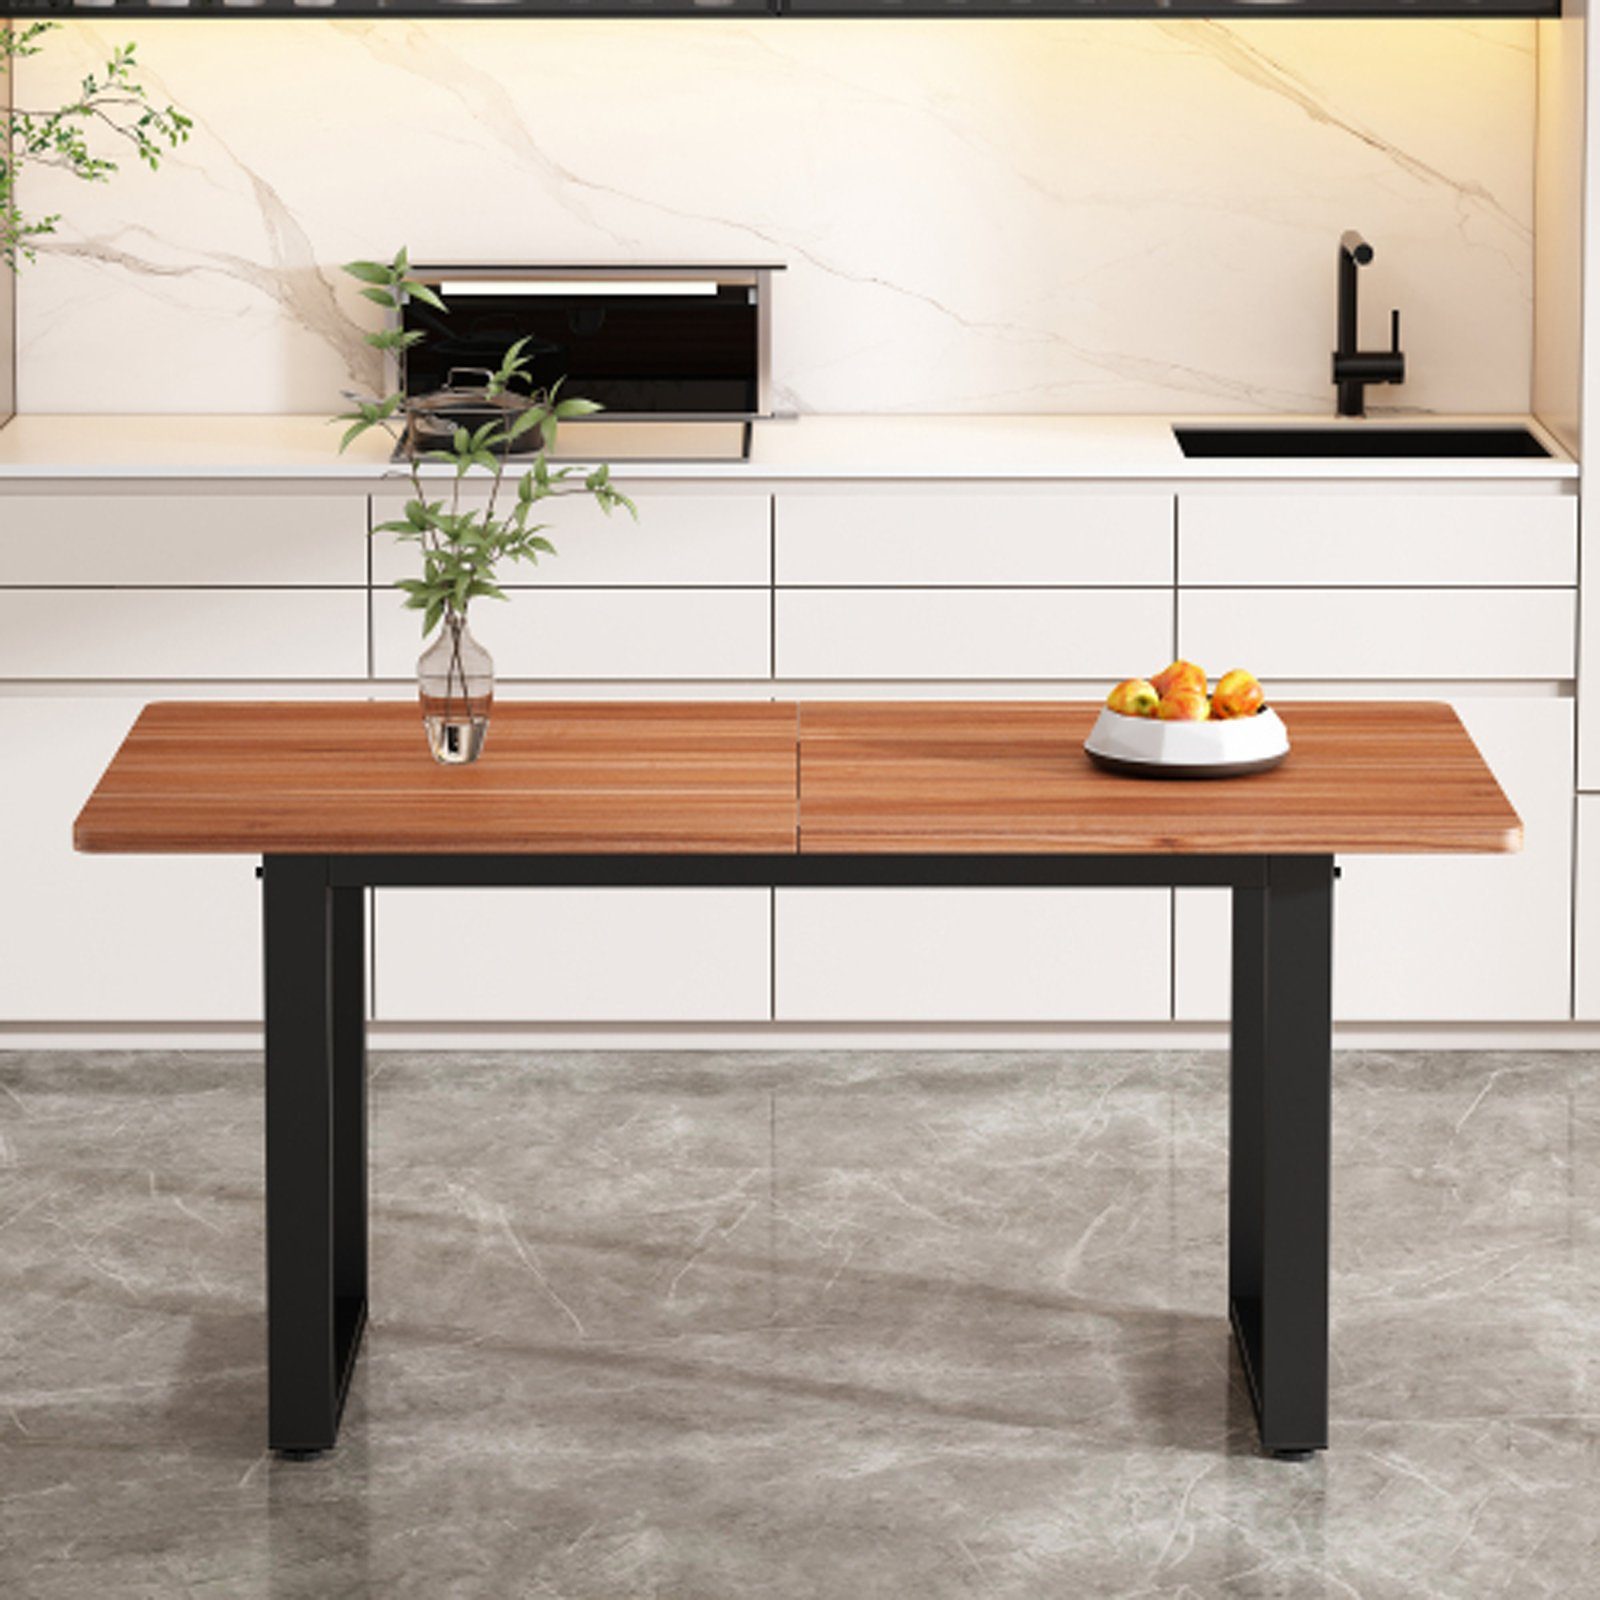 SEEZSSA Esstisch Industriestil,esstisch holz, Kaffee-Freizeittisch 140x70cm (Esszimmerestuhl), ausziehbarer Tisch Küchenstuhl aus Hochwertigem Holz und Stahl Braun | Esstische